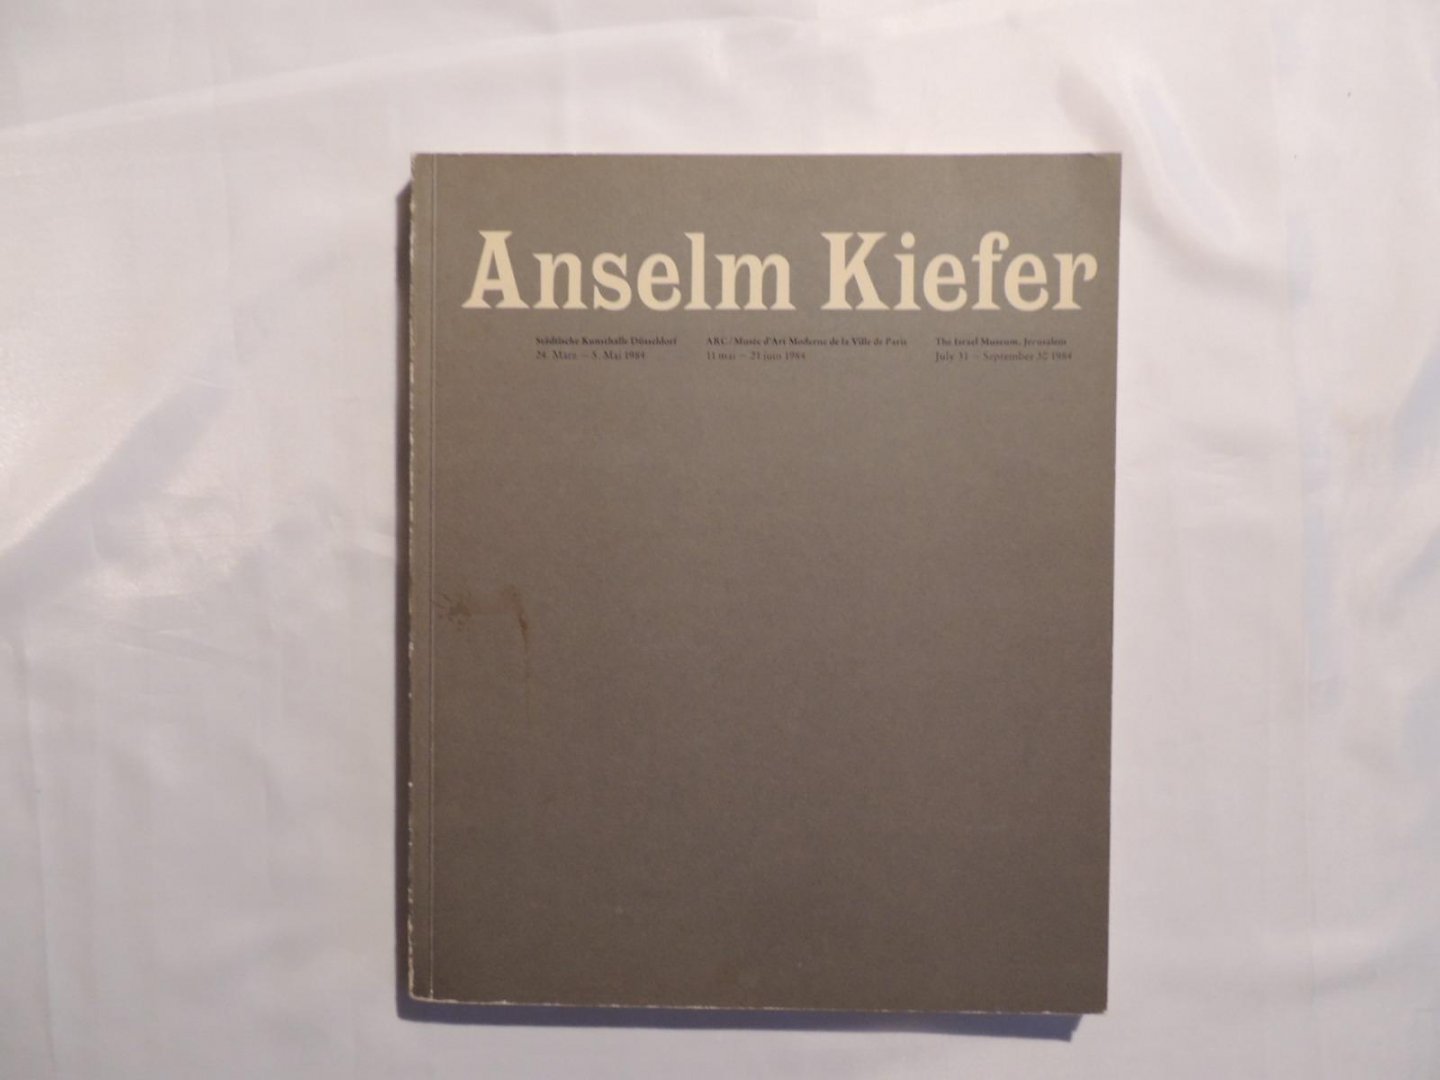 Harten, Jürgen, a.o., ed., - Anselm Kiefer. 24 MARZ-30 SEPT 1984. Städtische Kunsthalle Düsseldorf, ARC/ Musée d'Art Moderne de la Ville de Paris, The Israel Museum Jerusalem (1984)